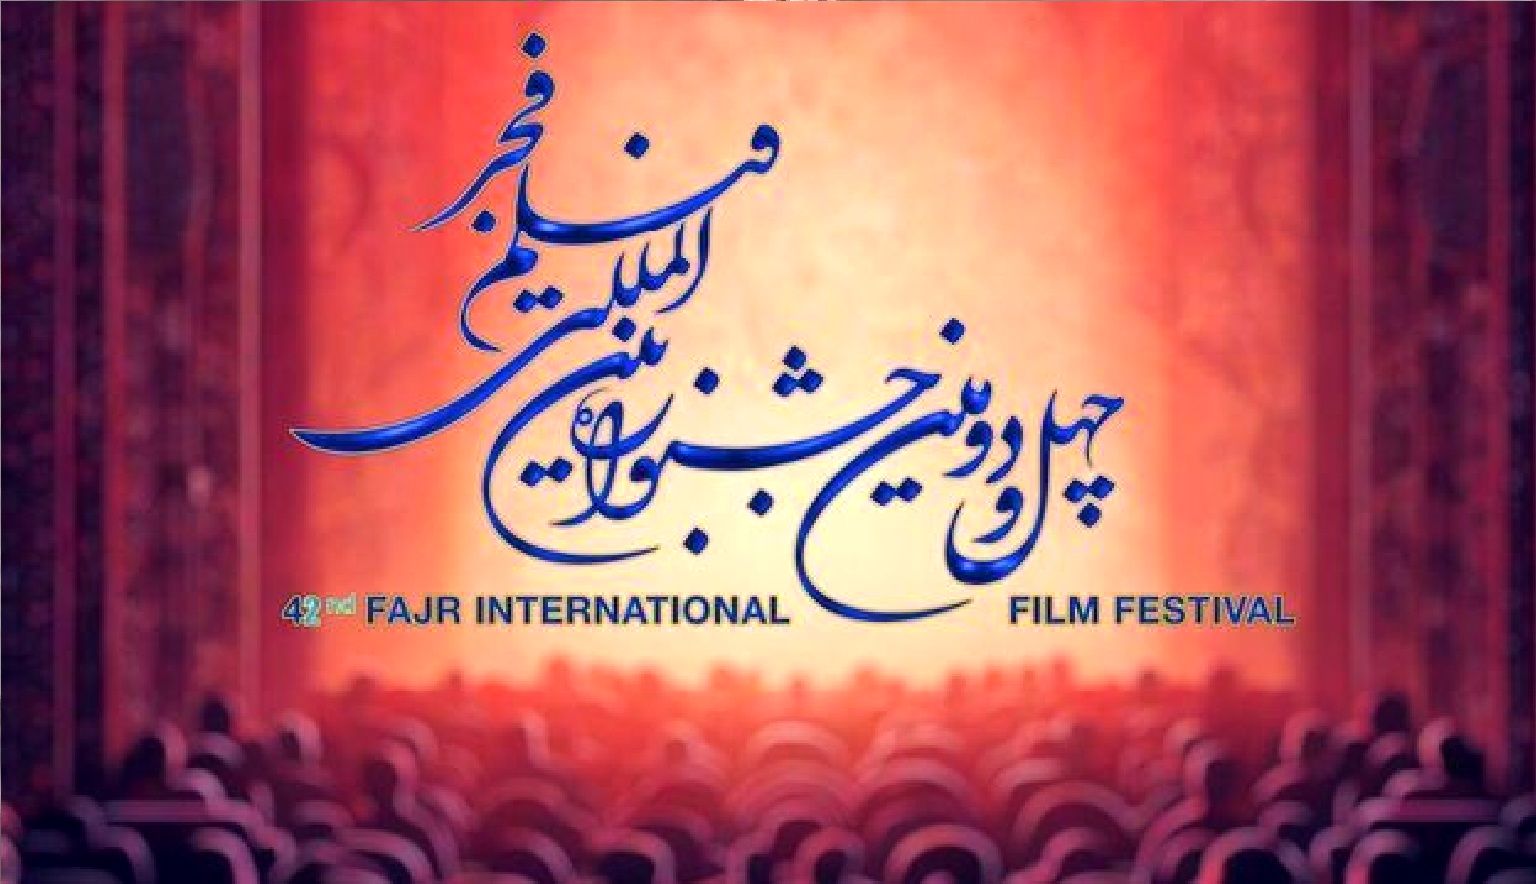 یک اکران ویژه در جشنواره فیلم فجر / اختصاص سالن سینمایی به ناشنوایان، معلولان و نابینایان